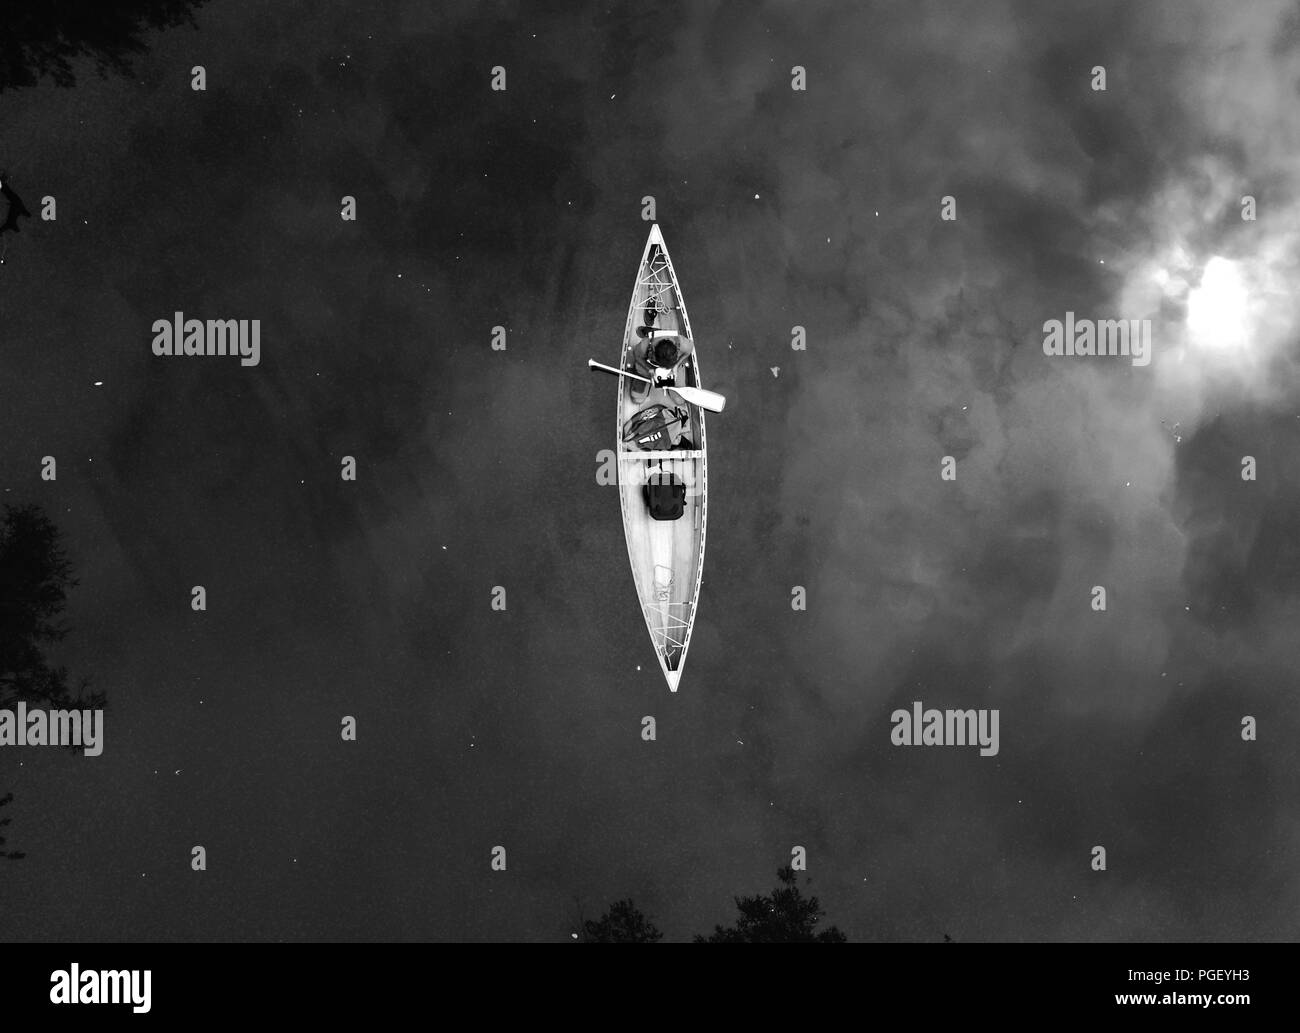 Drone shot mirando hacia abajo a un hombre en una canoa canadiense flotando sobre un río en blanco y negro Foto de stock